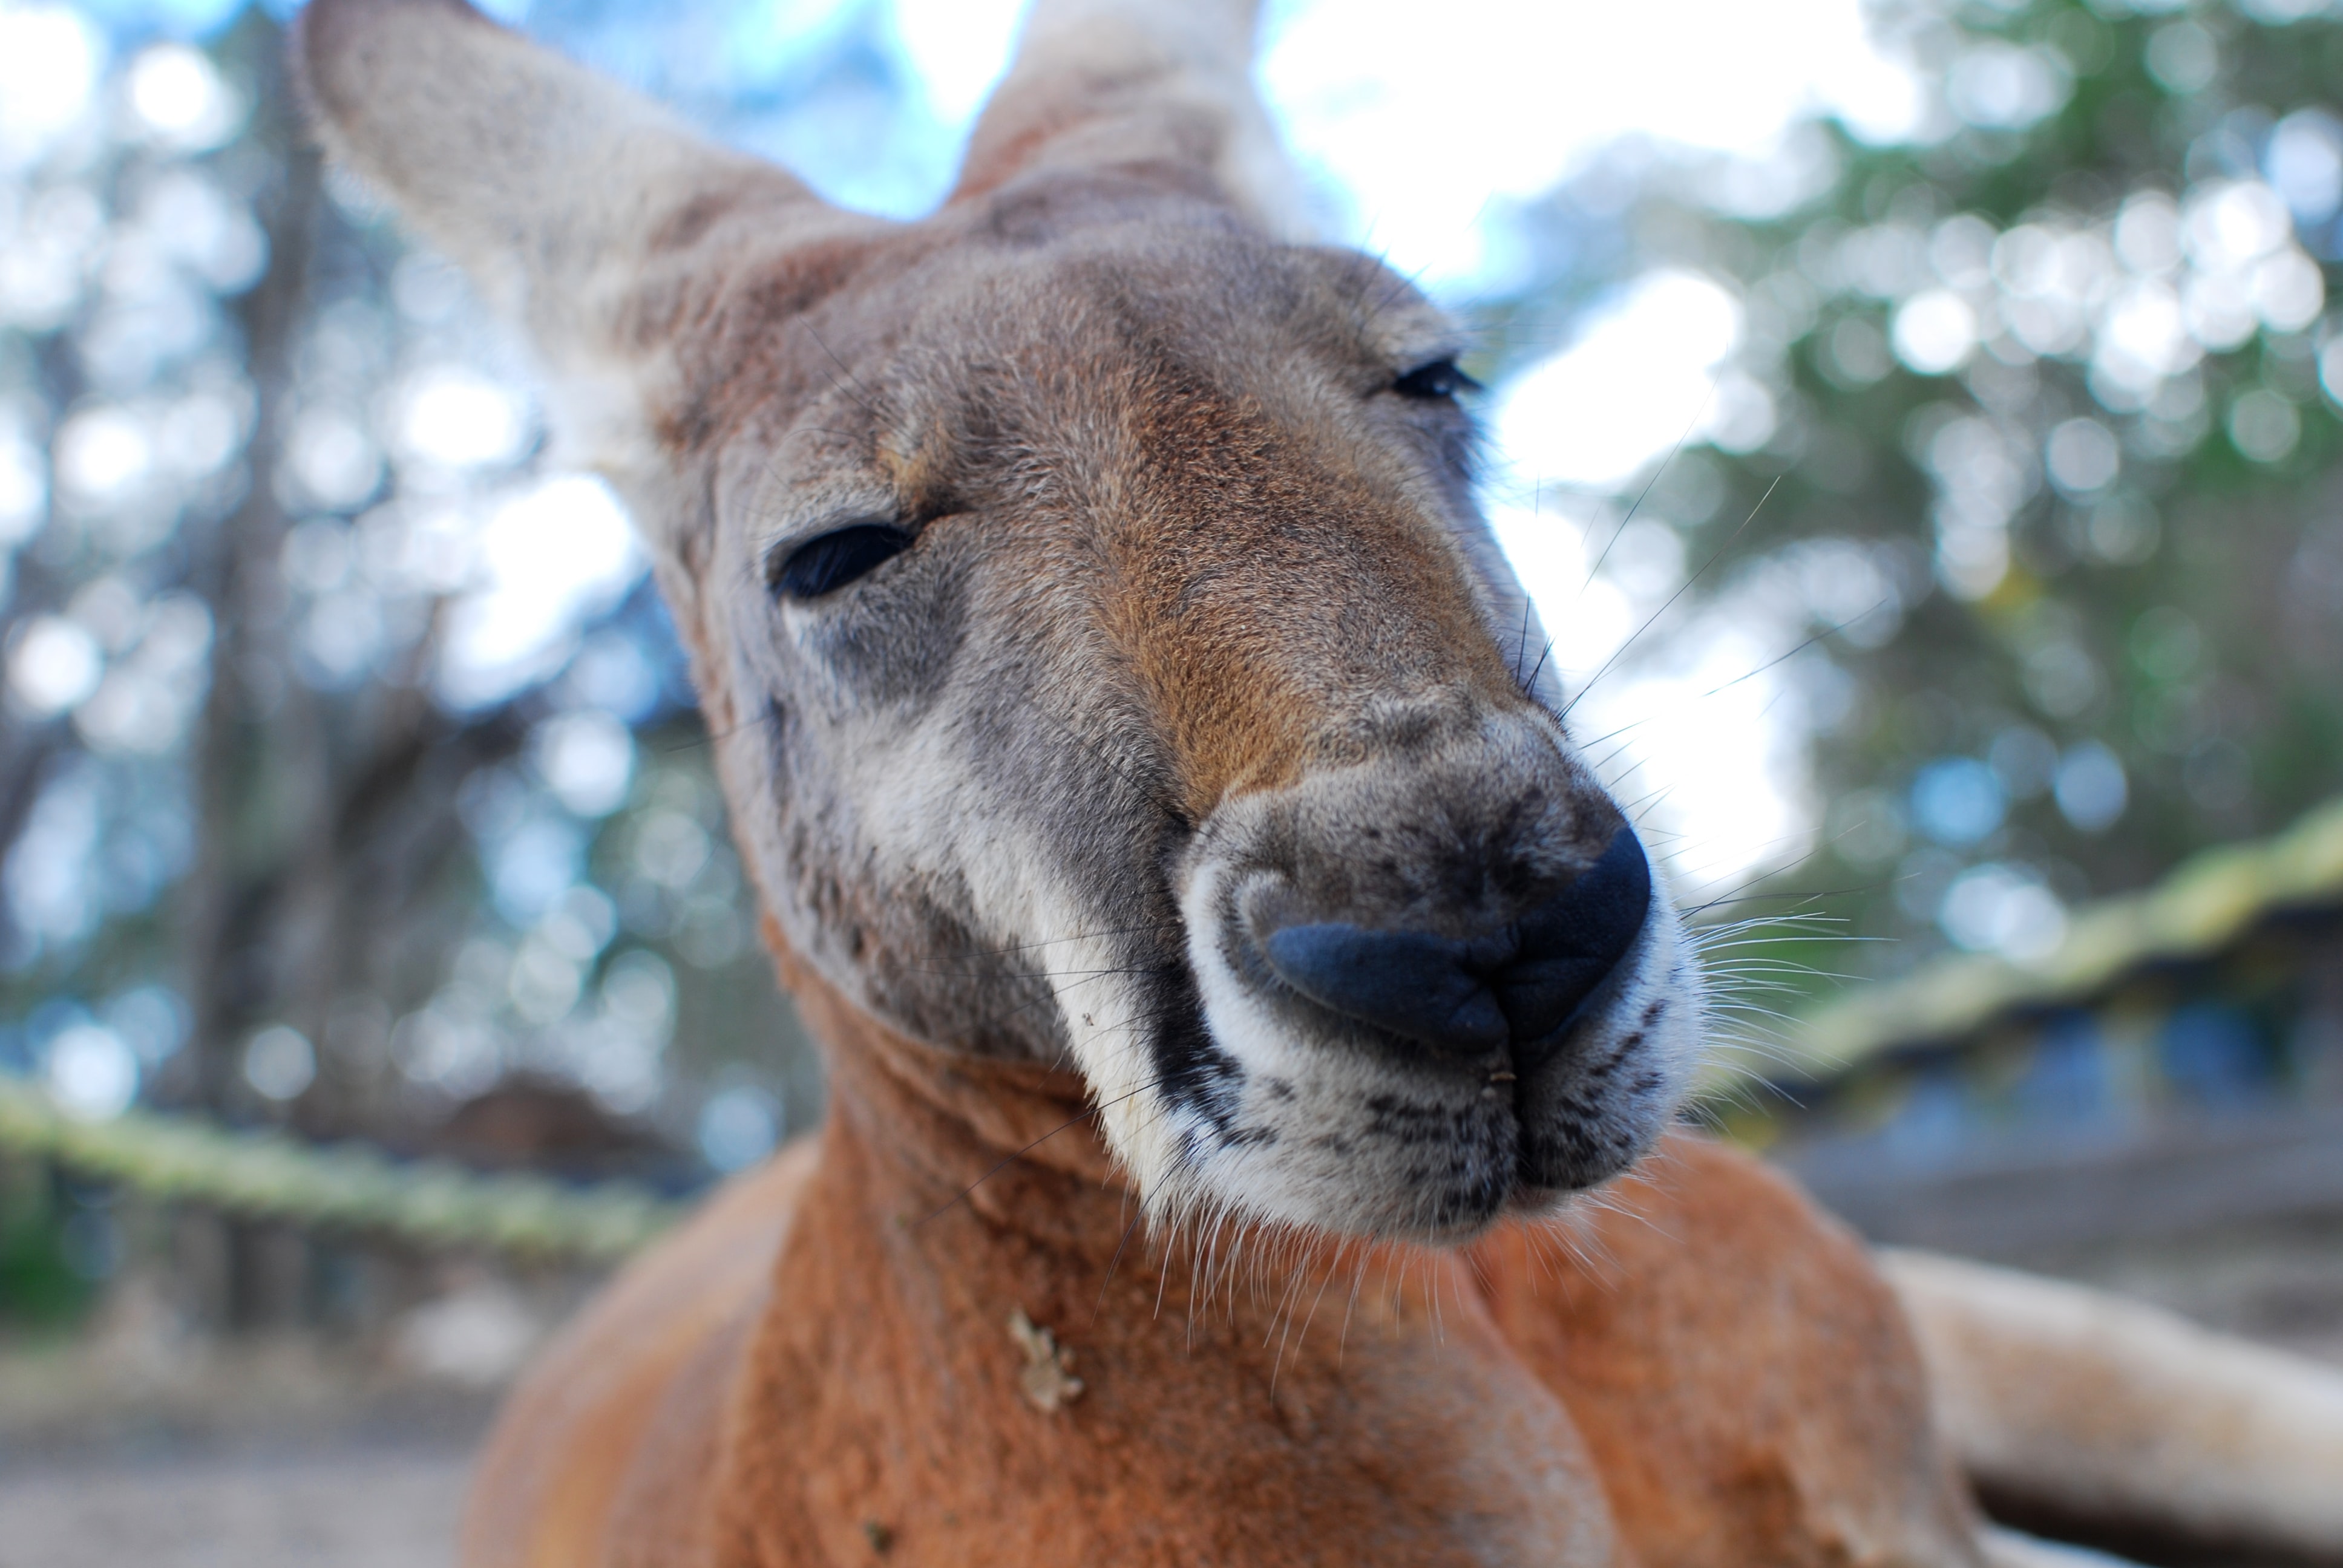 The face of a Kangaroo